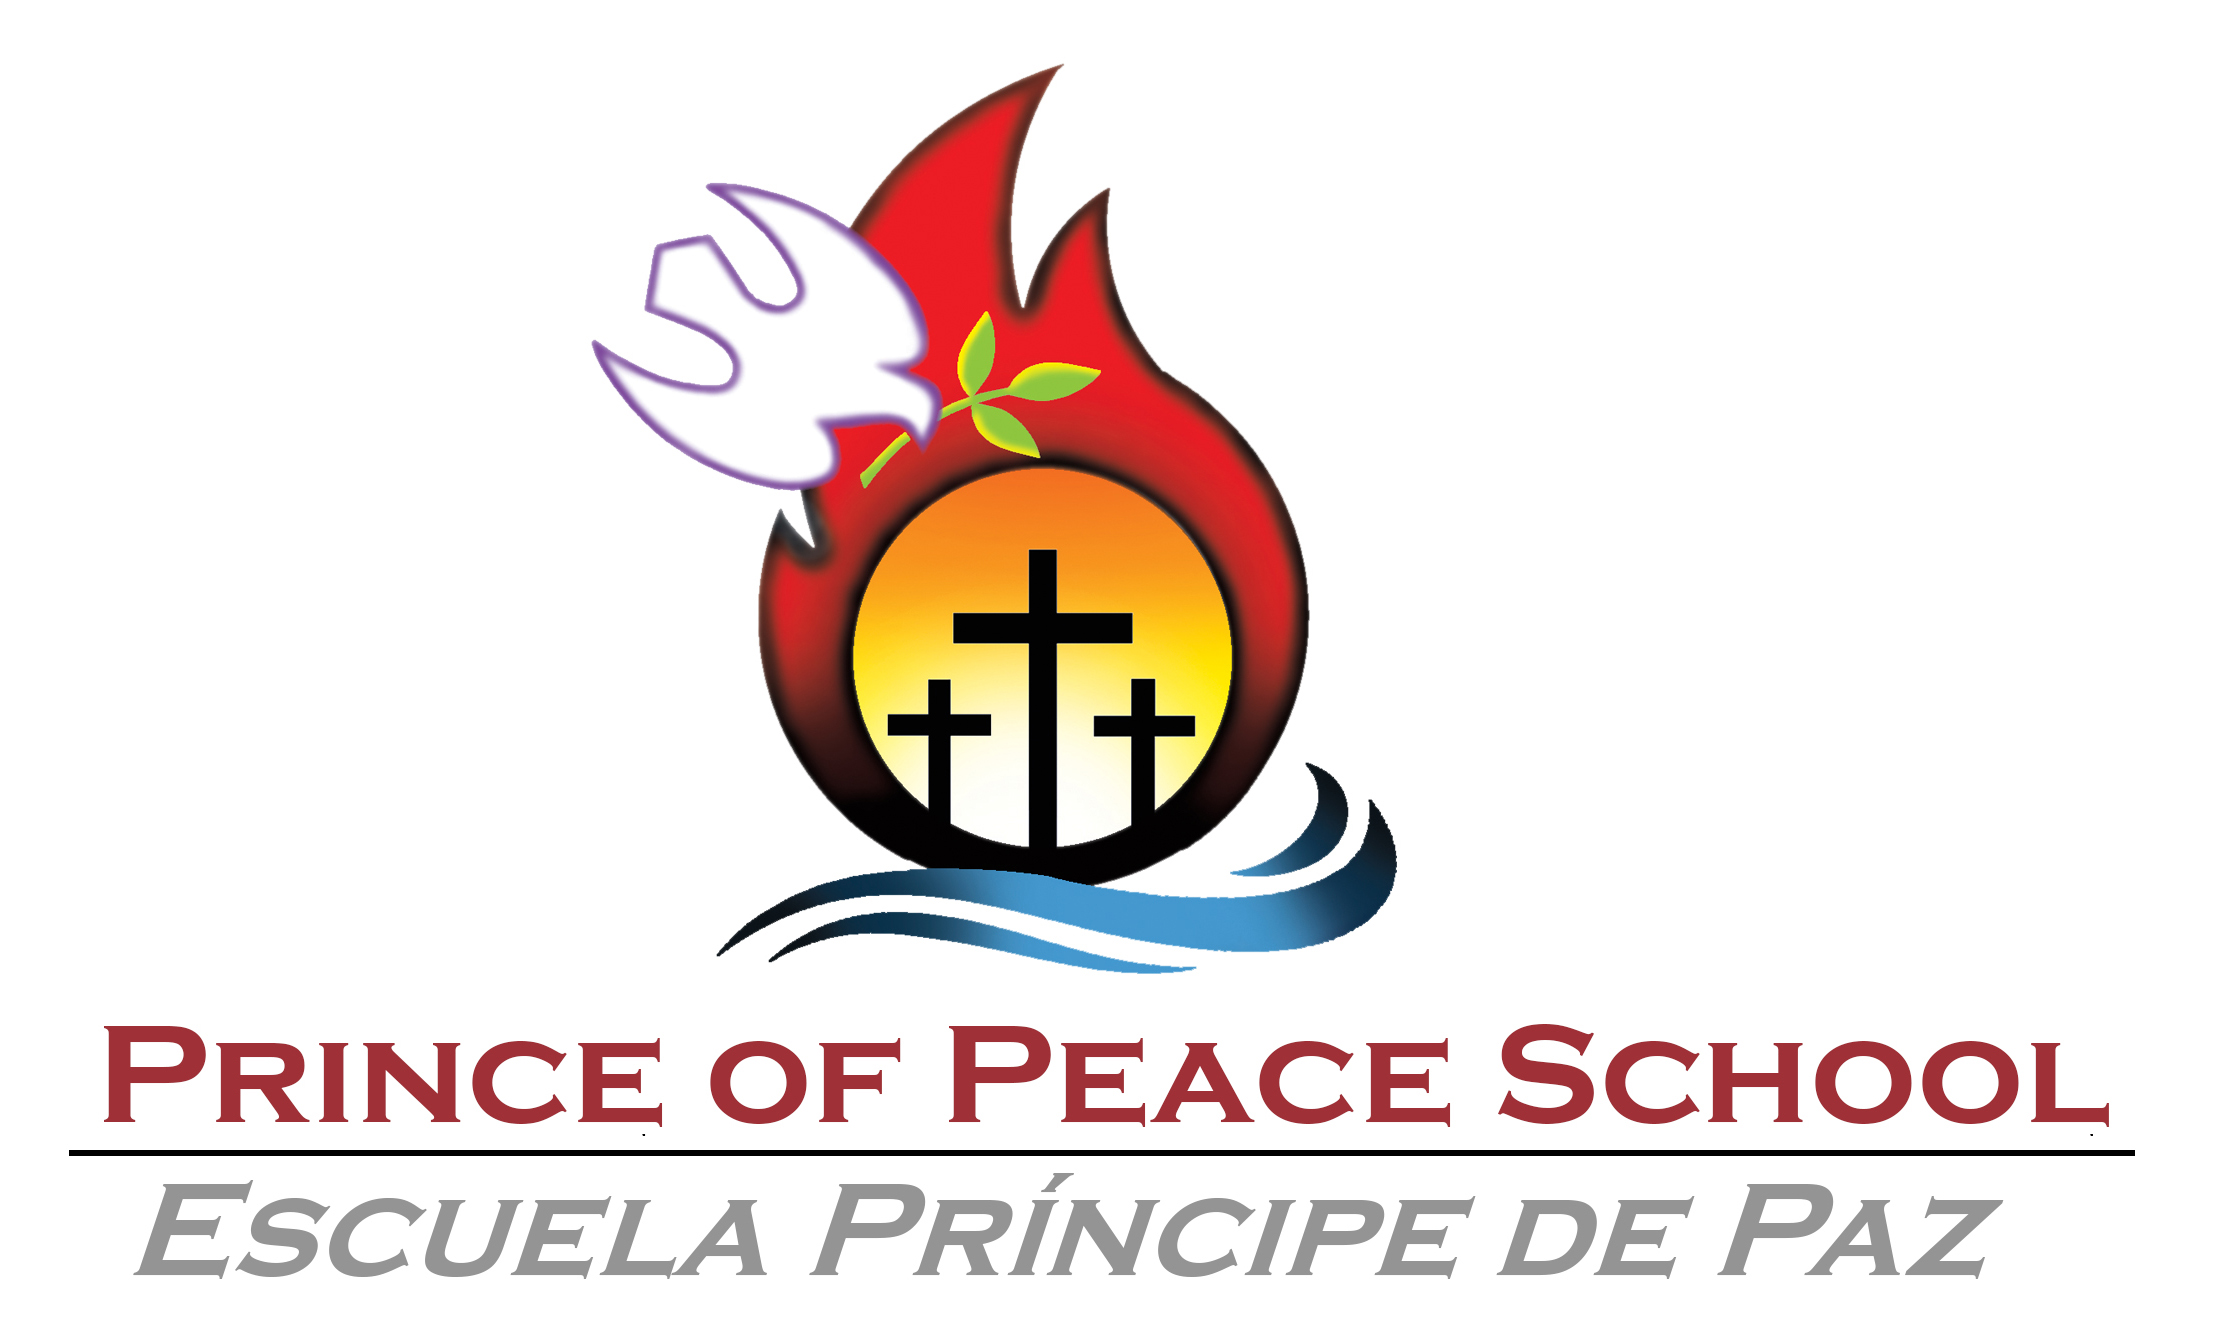 Prince of Peace/Principe de Paz